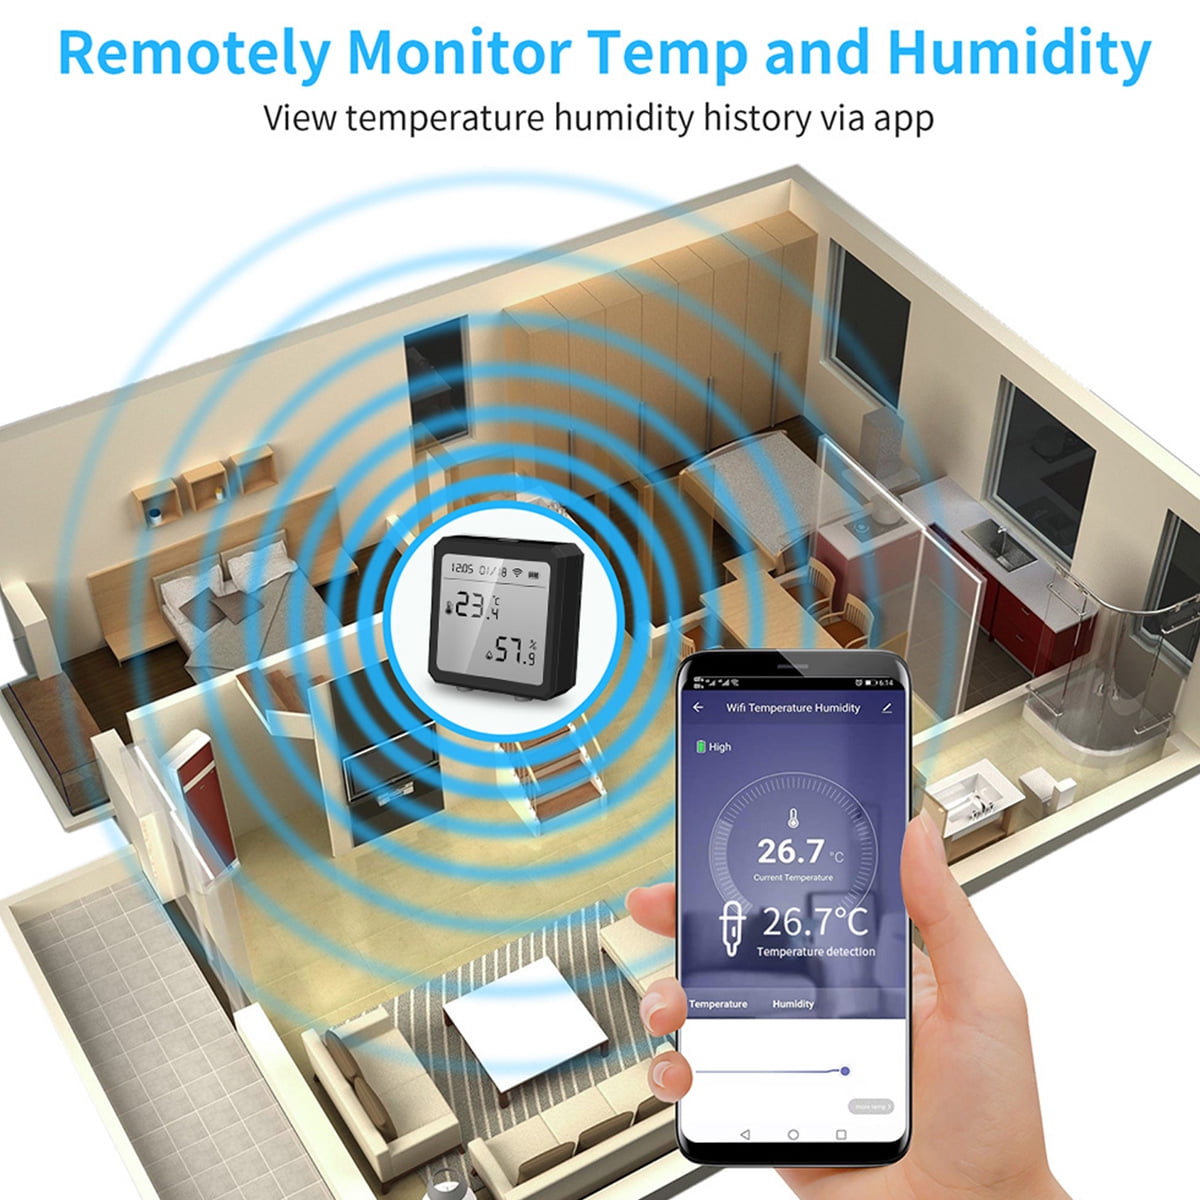 Smart WIFI Indoor Outdoor Hygrometer Thermometer Alexa Google App Control